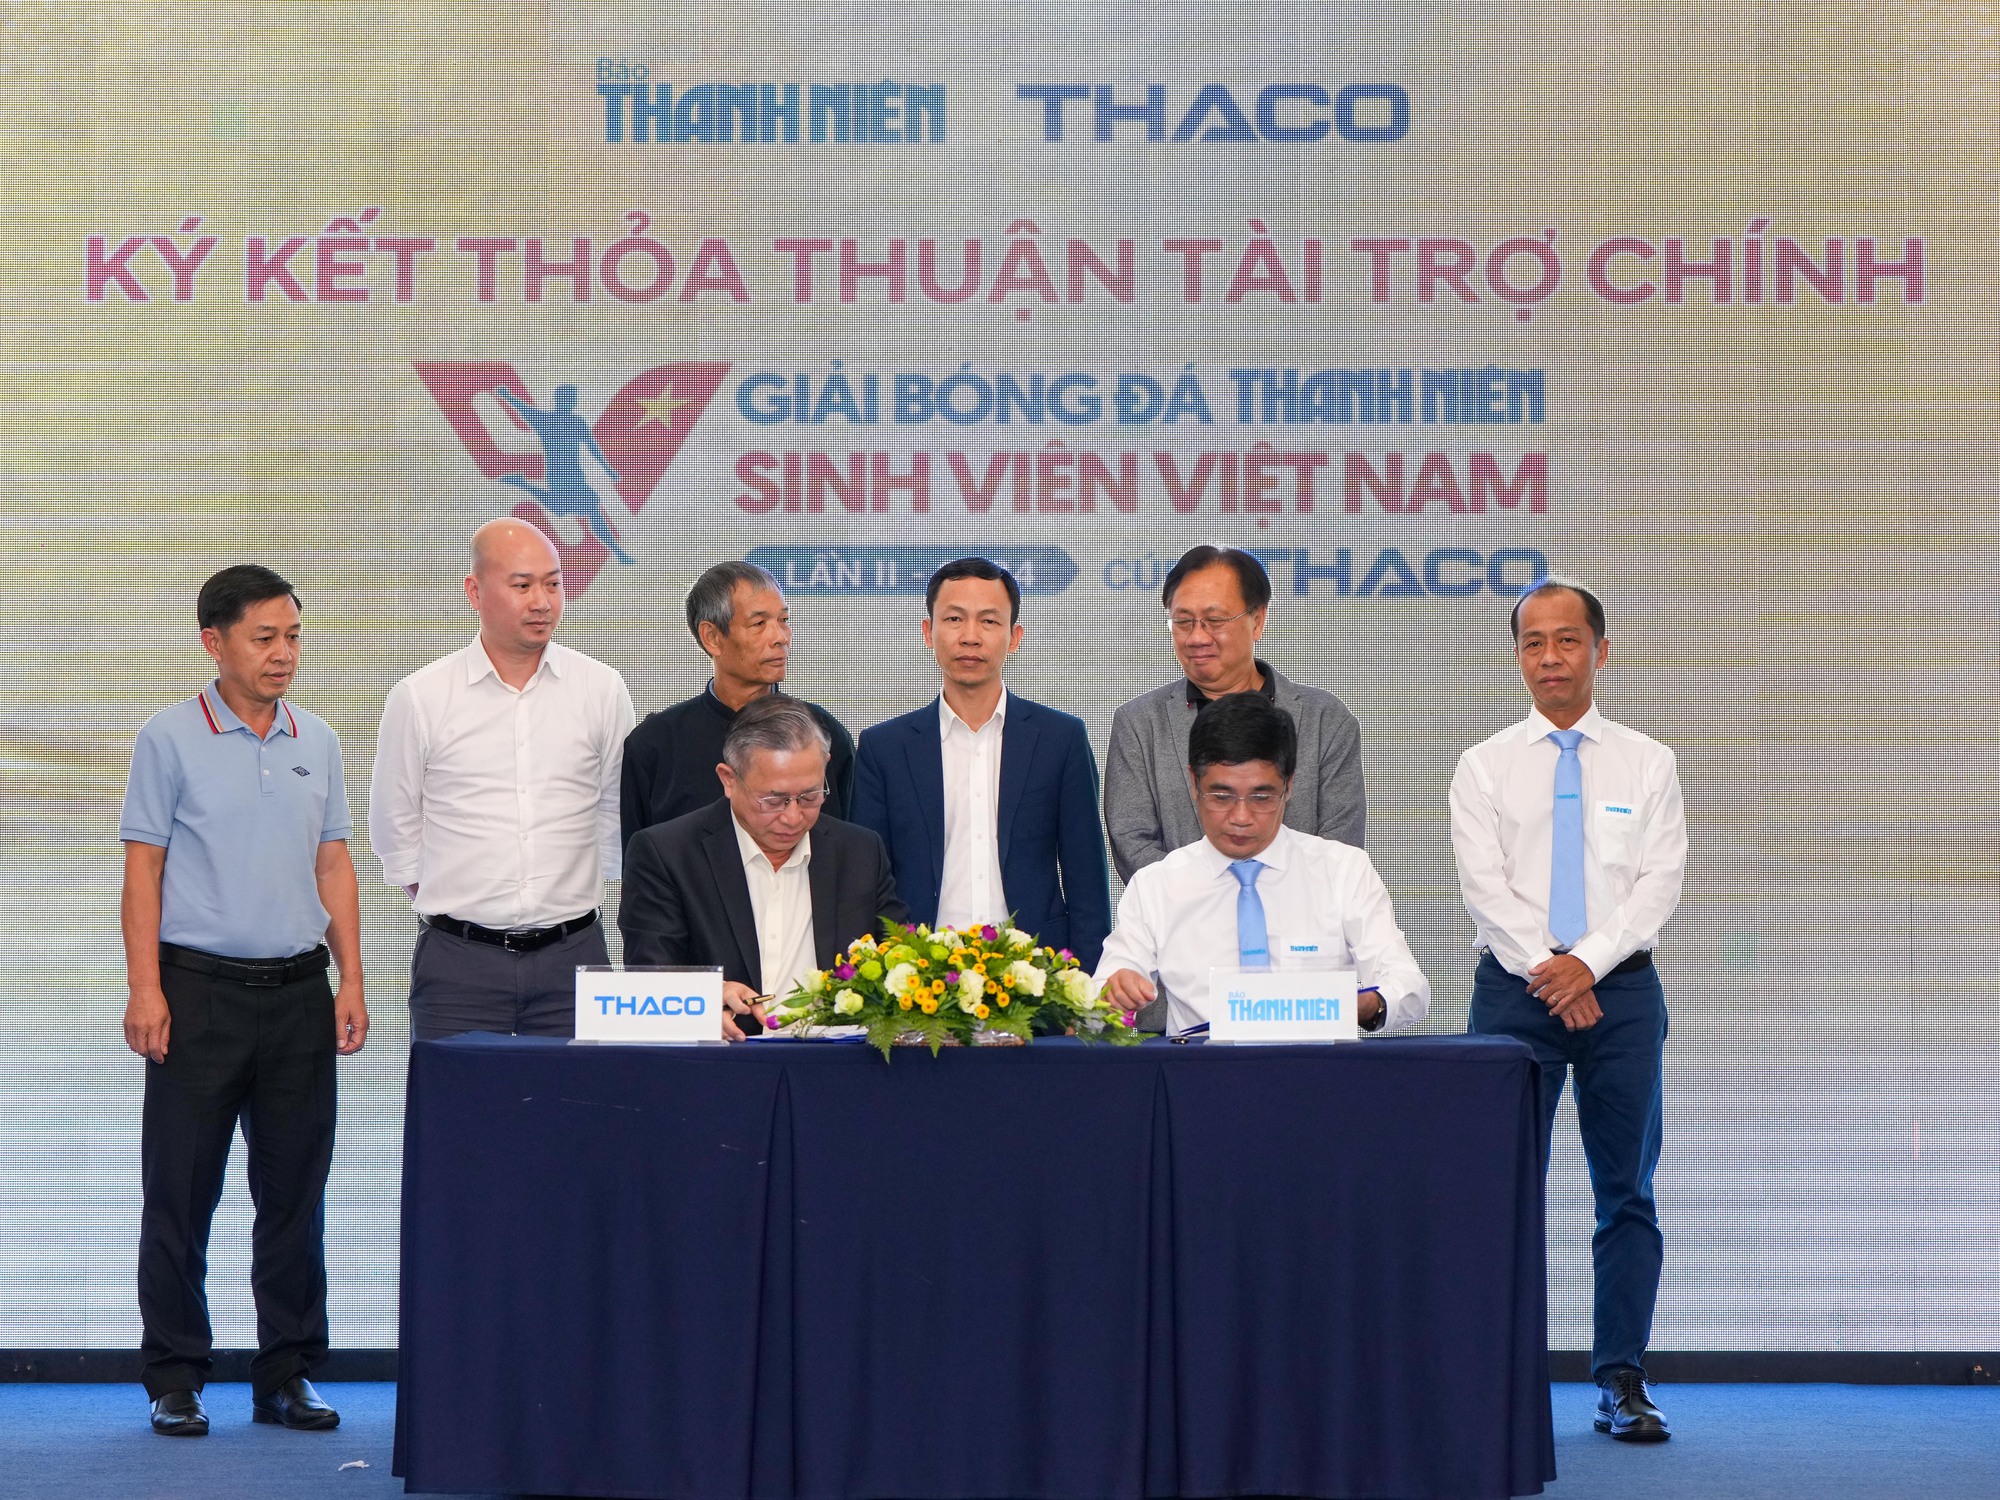 Tổng giám đốc Phạm Văn Tài: ‘THACO dành sự quan tâm đặc biệt cho thể thao nước nhà’- Ảnh 2.